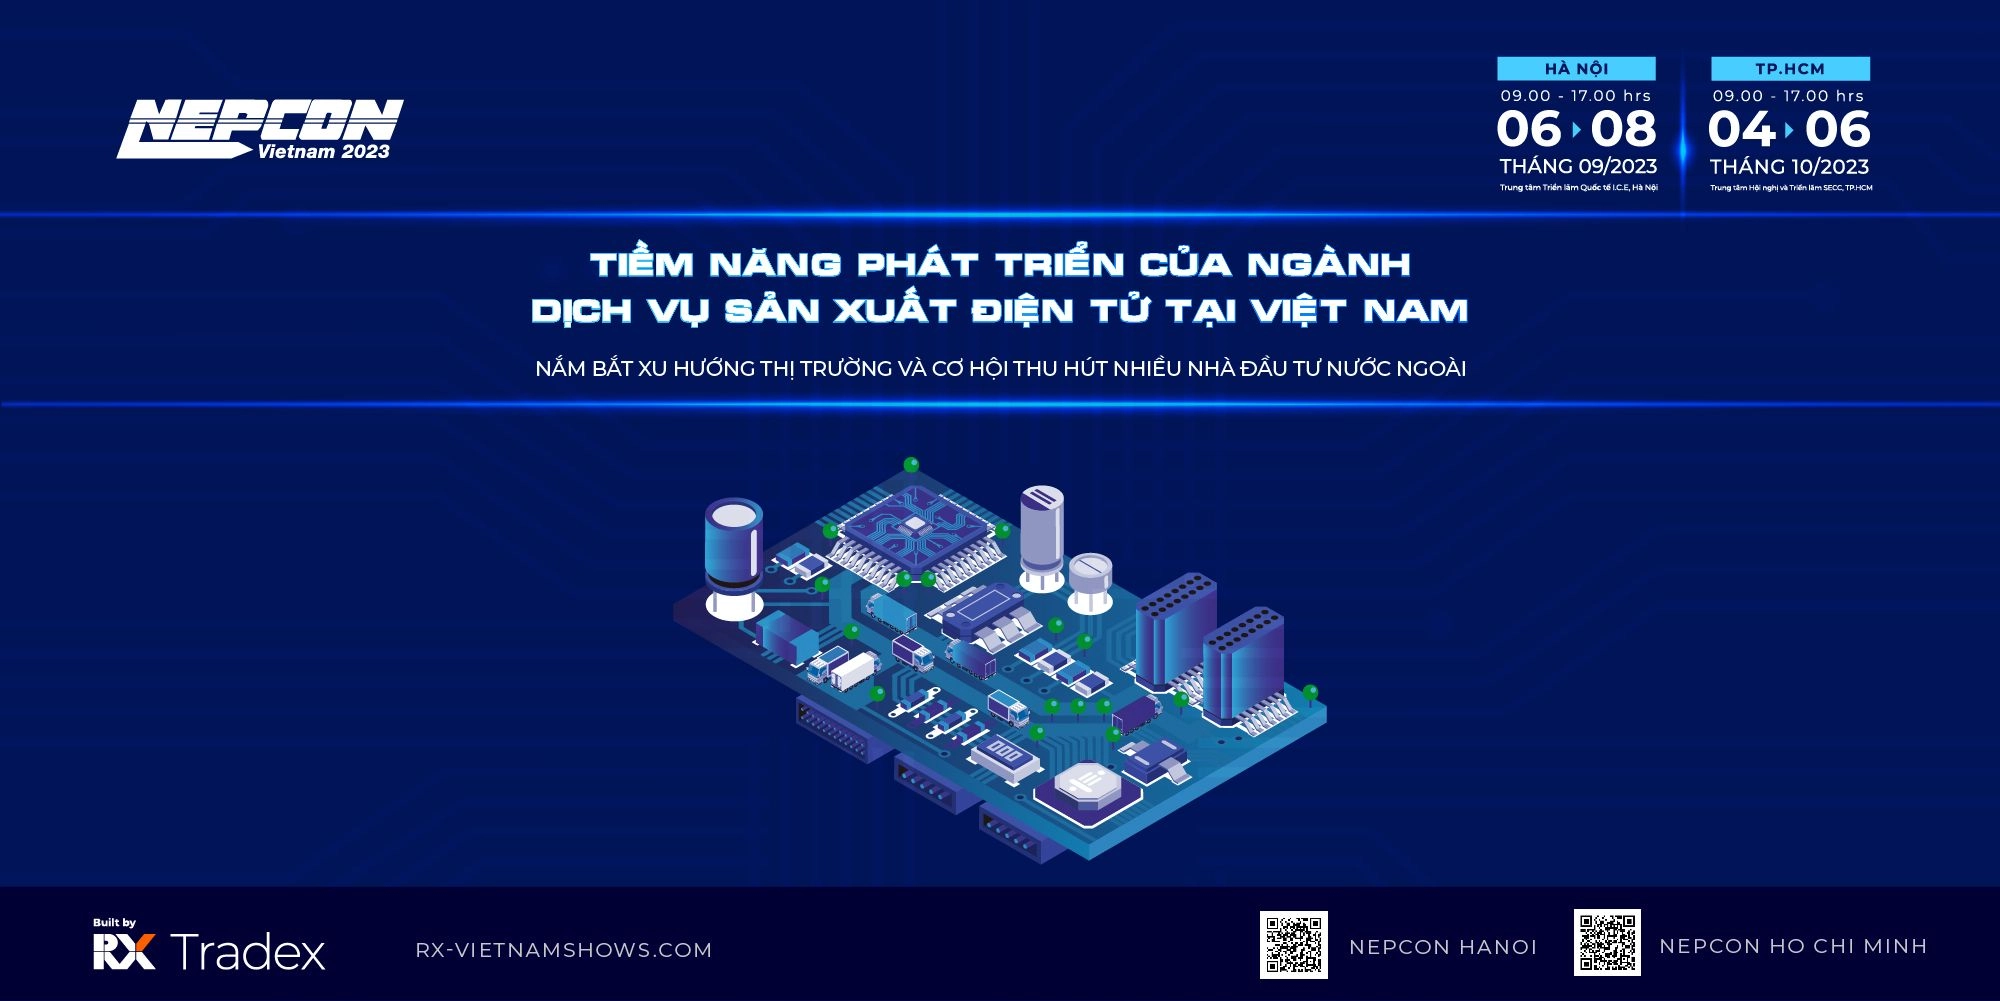 Tiềm năng phát triển của ngành dịch vụ sản xuất điện tử tại Việt Nam